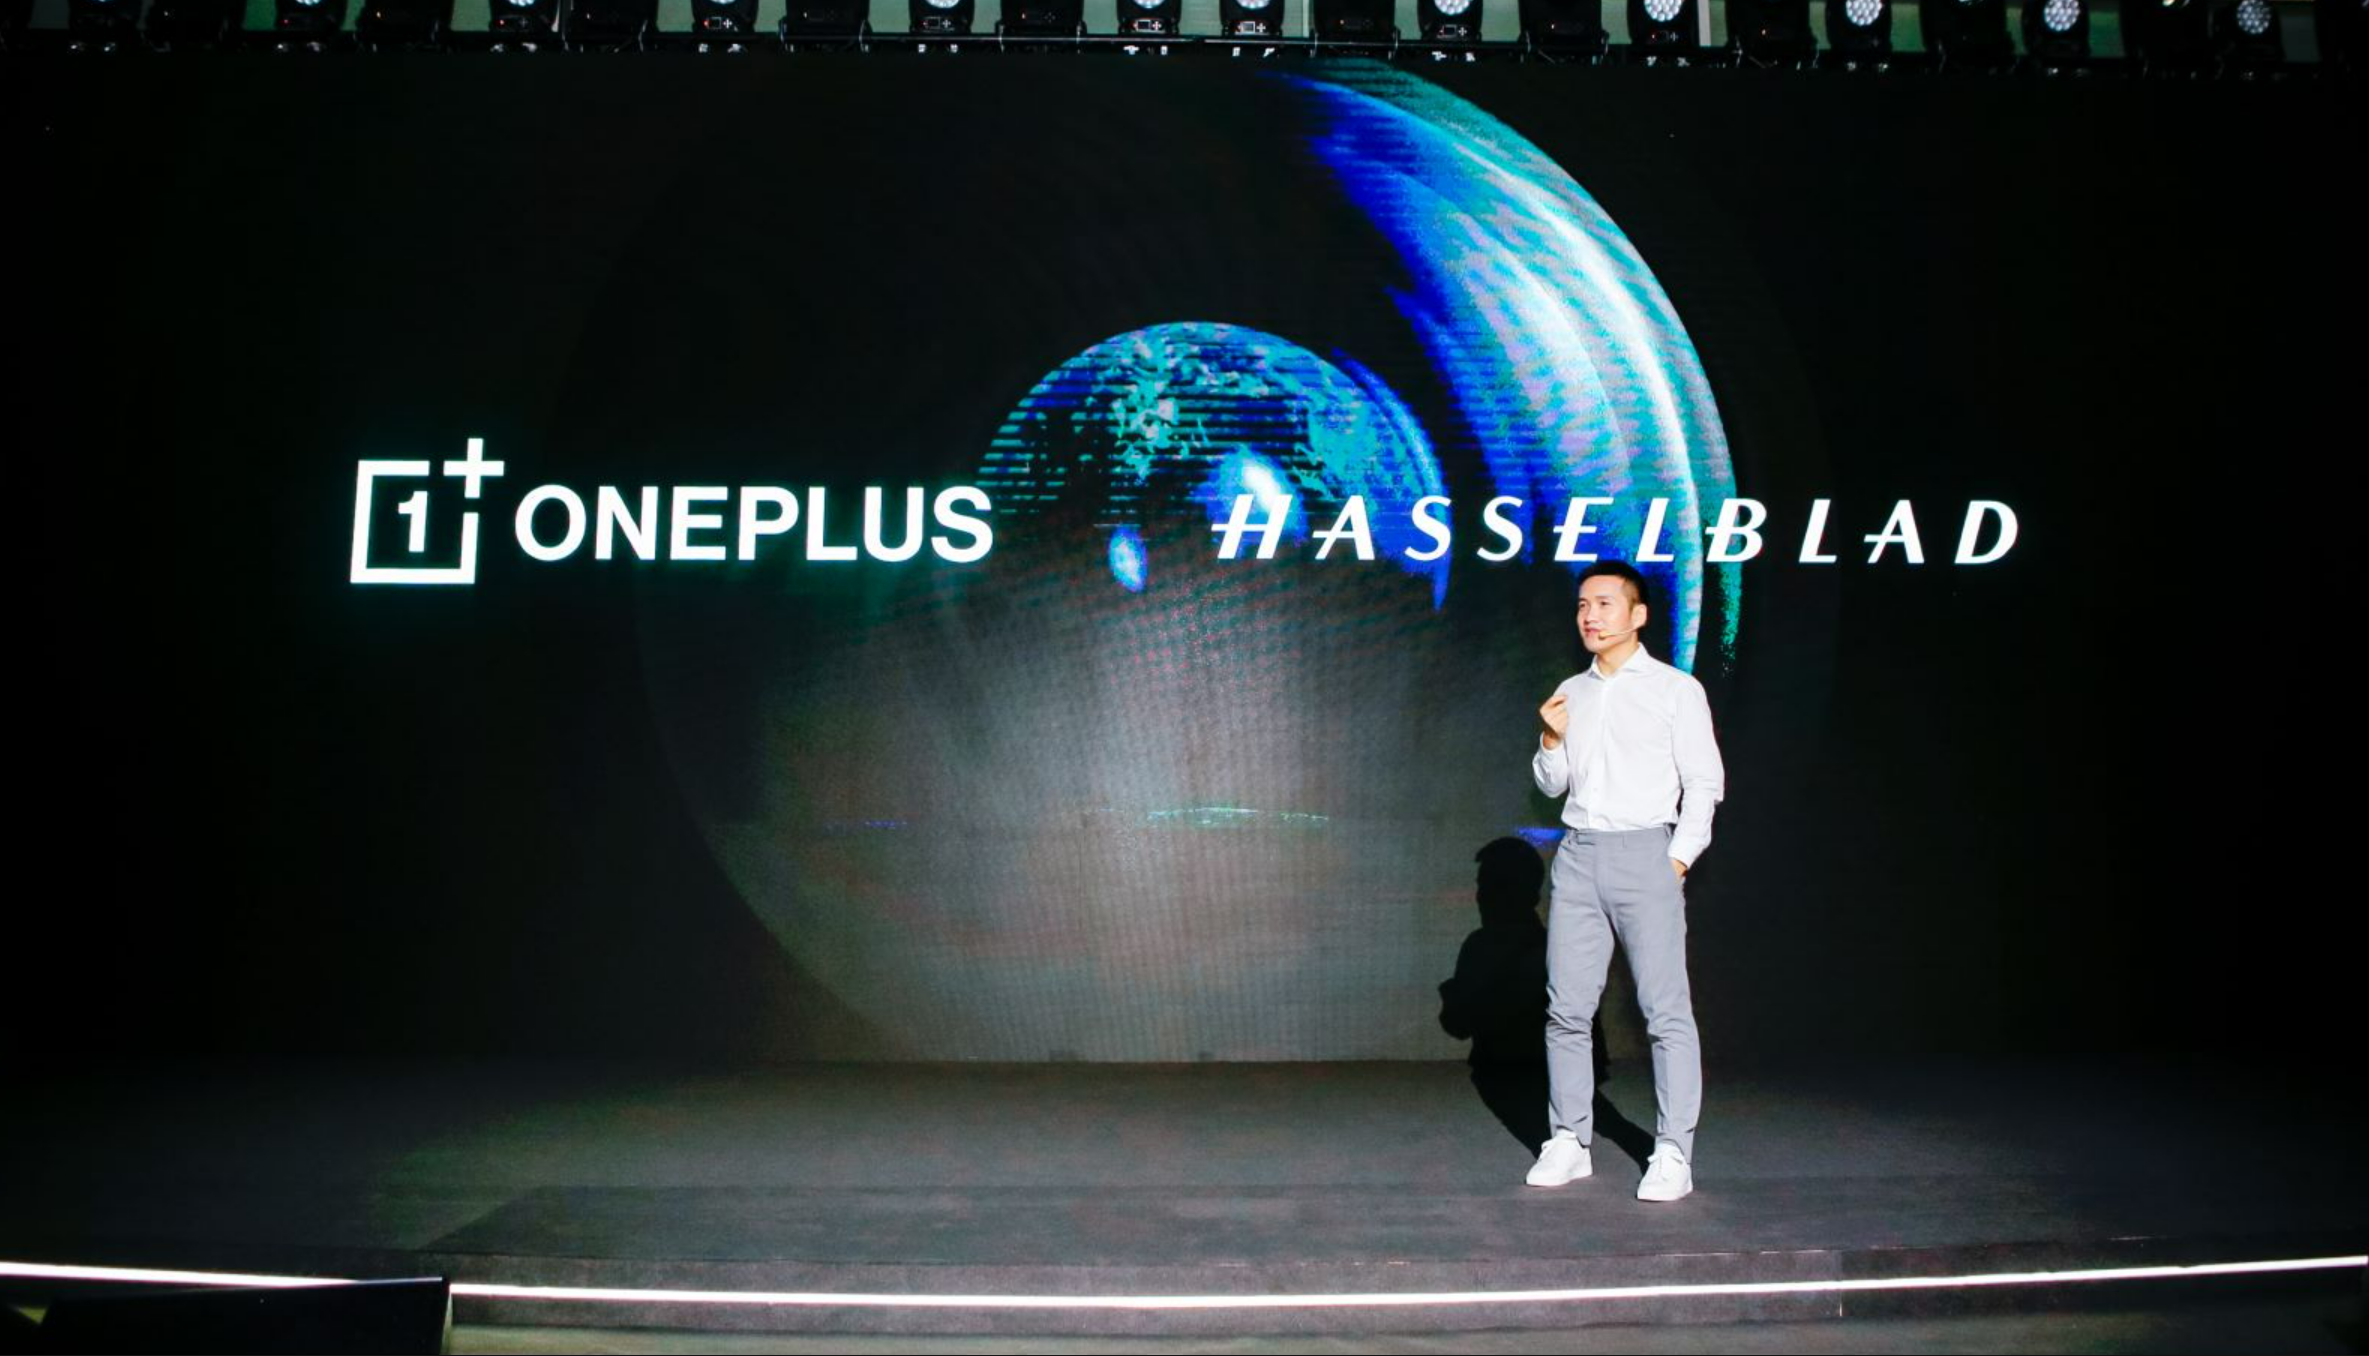 222222 - OnePlus e Hasselblad: ambizione e determinazione sulla traccia dell’immagine